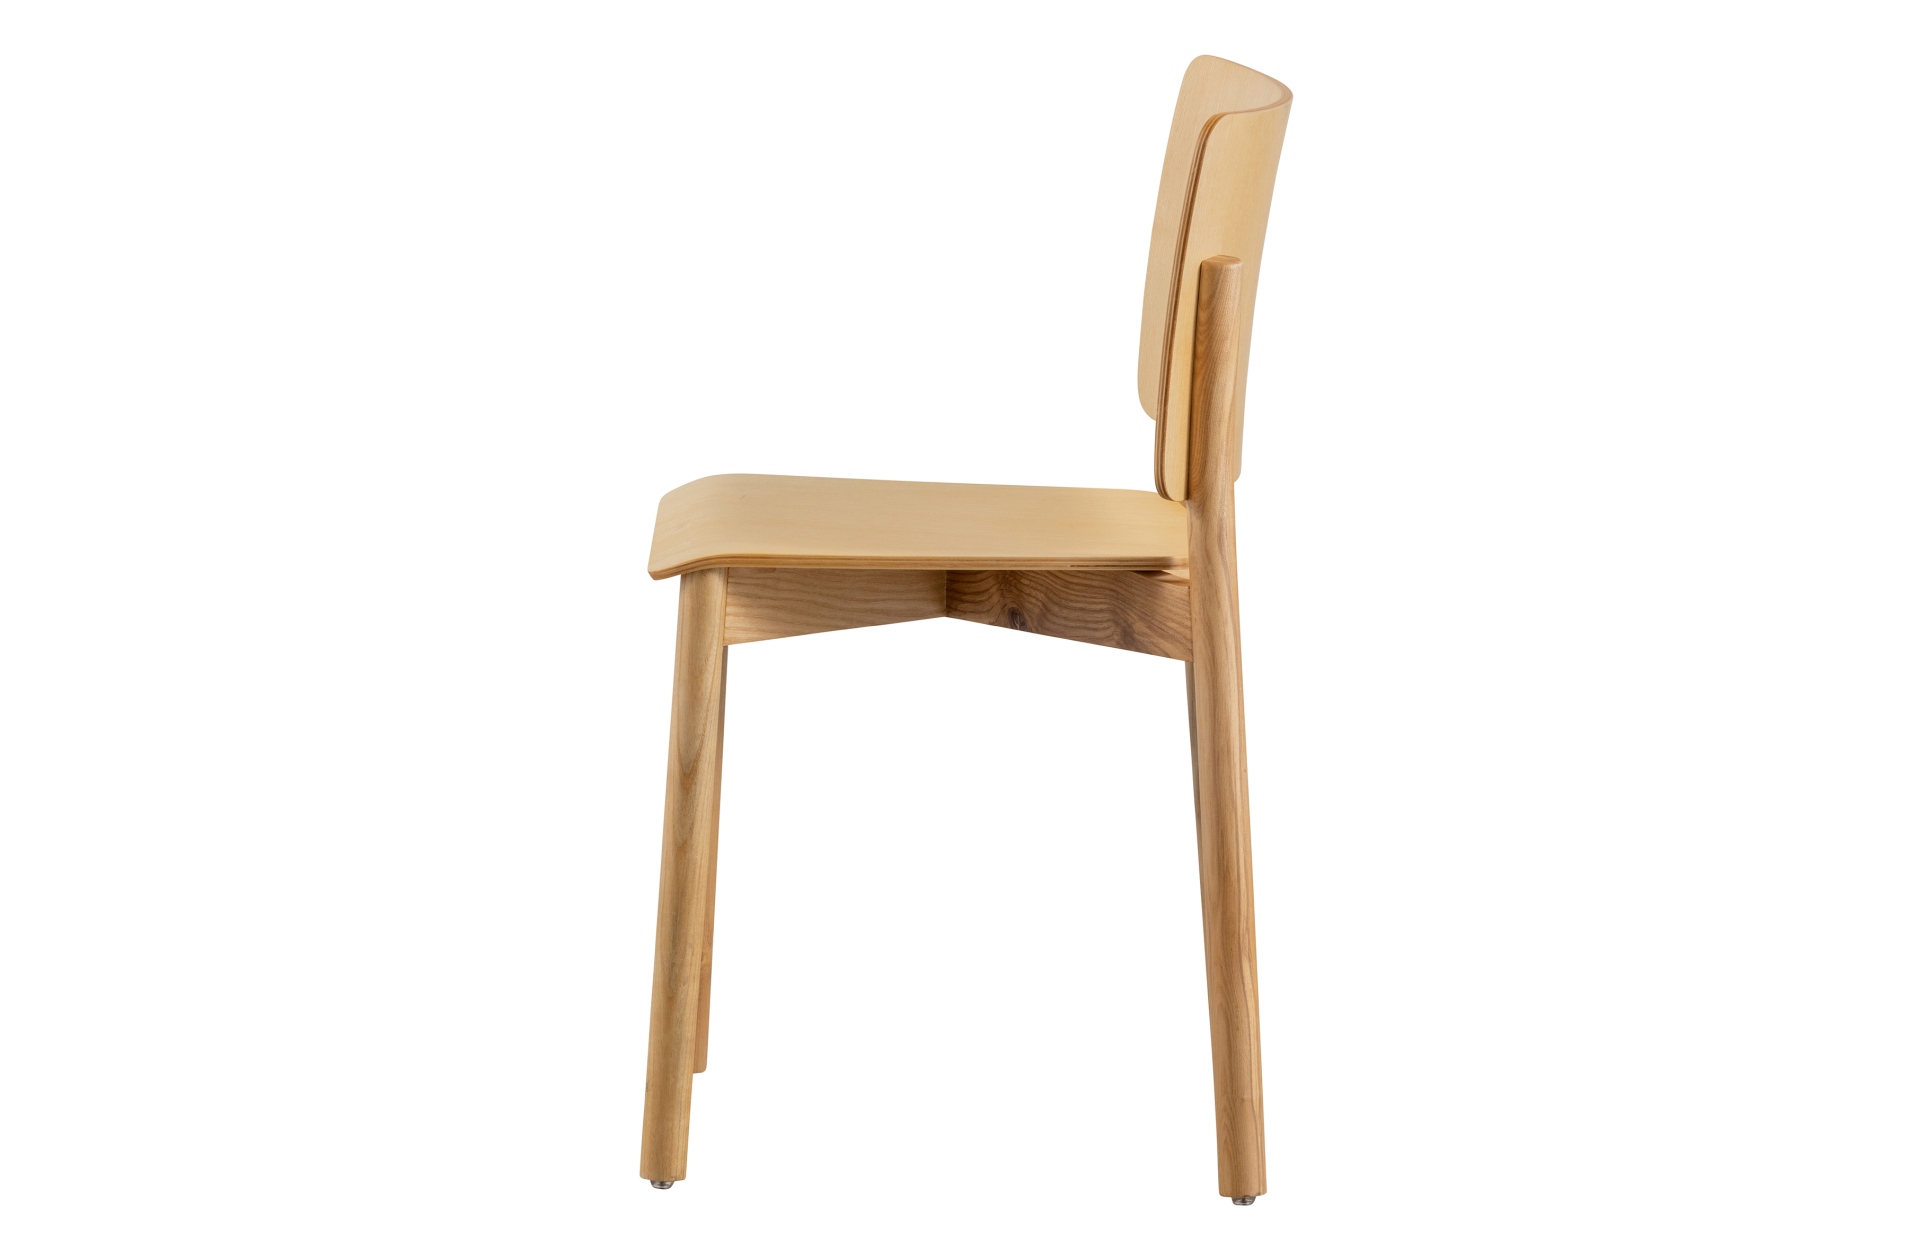 Der Esszimmerstuhl Karel wurde aus Eschenholz gefertigt und besitzt eine natürliche Farbe. Der Stuhl ist in zwei verschiedenen Varianten erhältlich